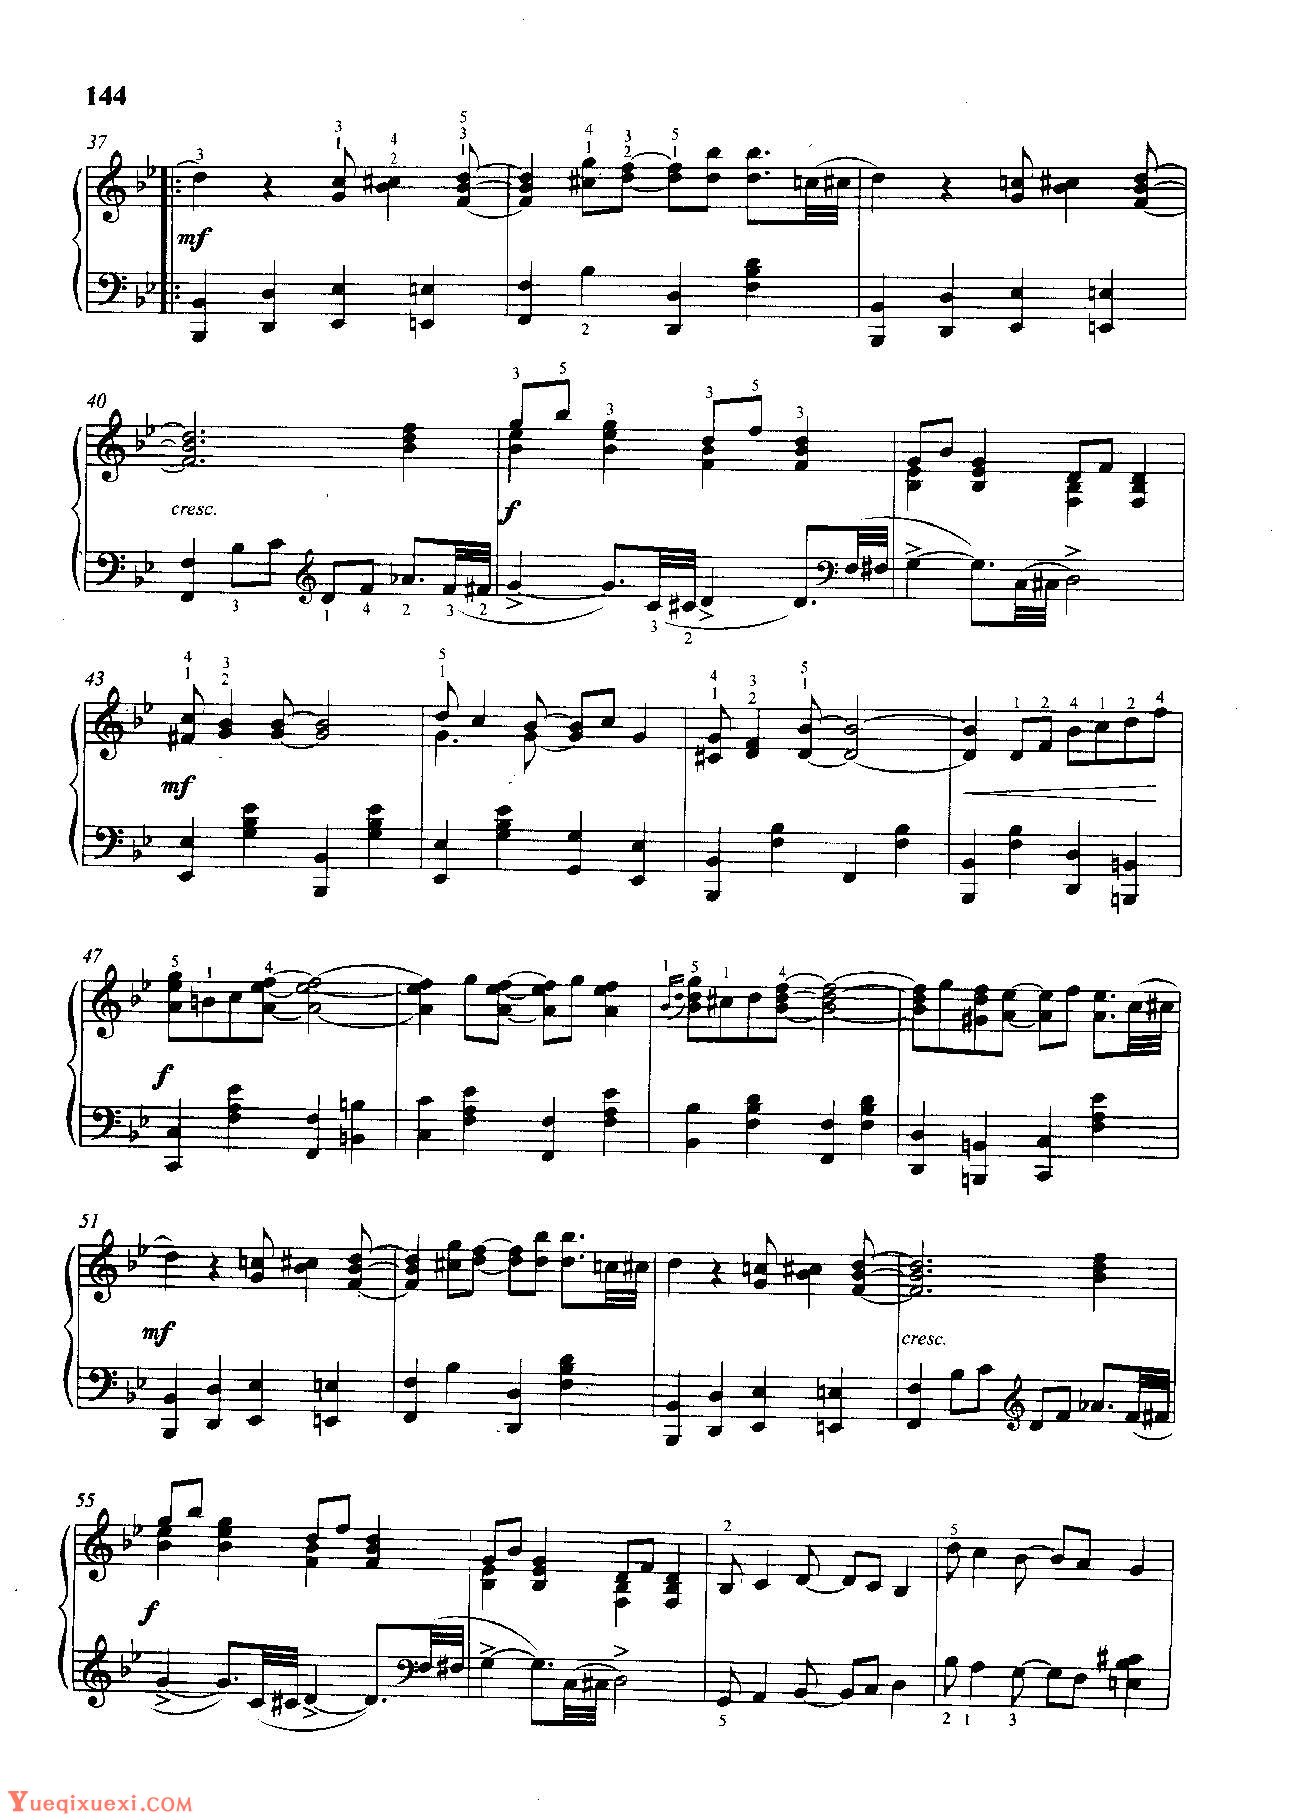 雷格泰姆钢琴乐谱《夺人心魄的雷格》雷格泰姆之王斯科特·乔普林